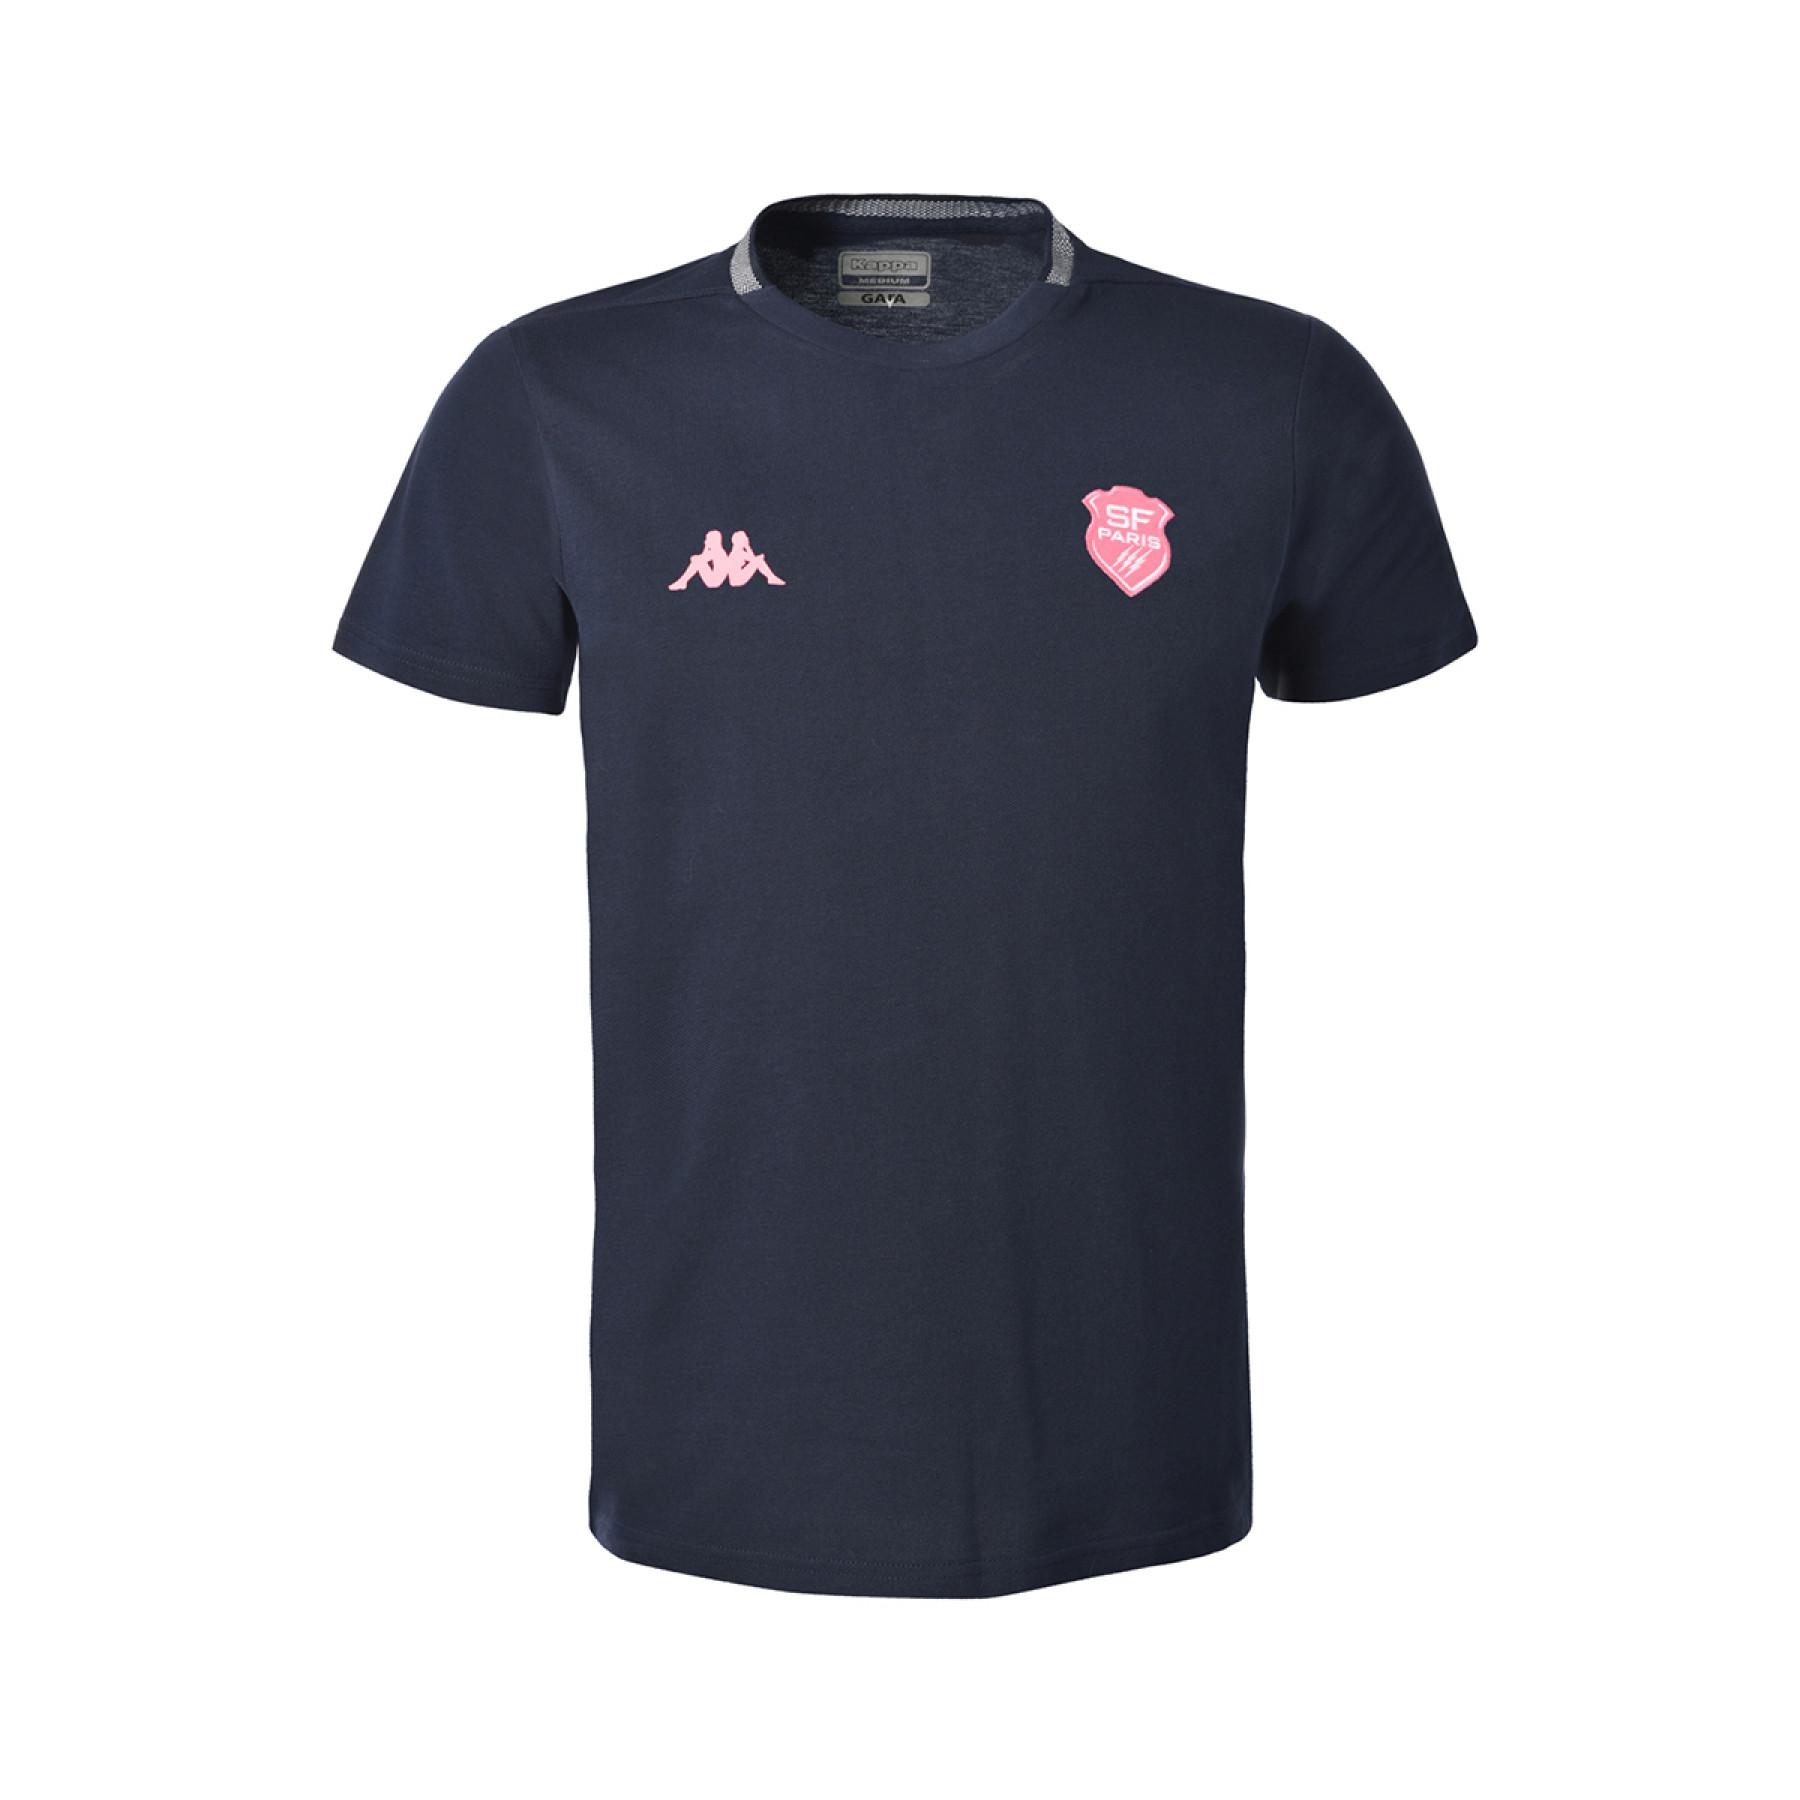 Child's T-shirt Stade Français 2020/21 angelico